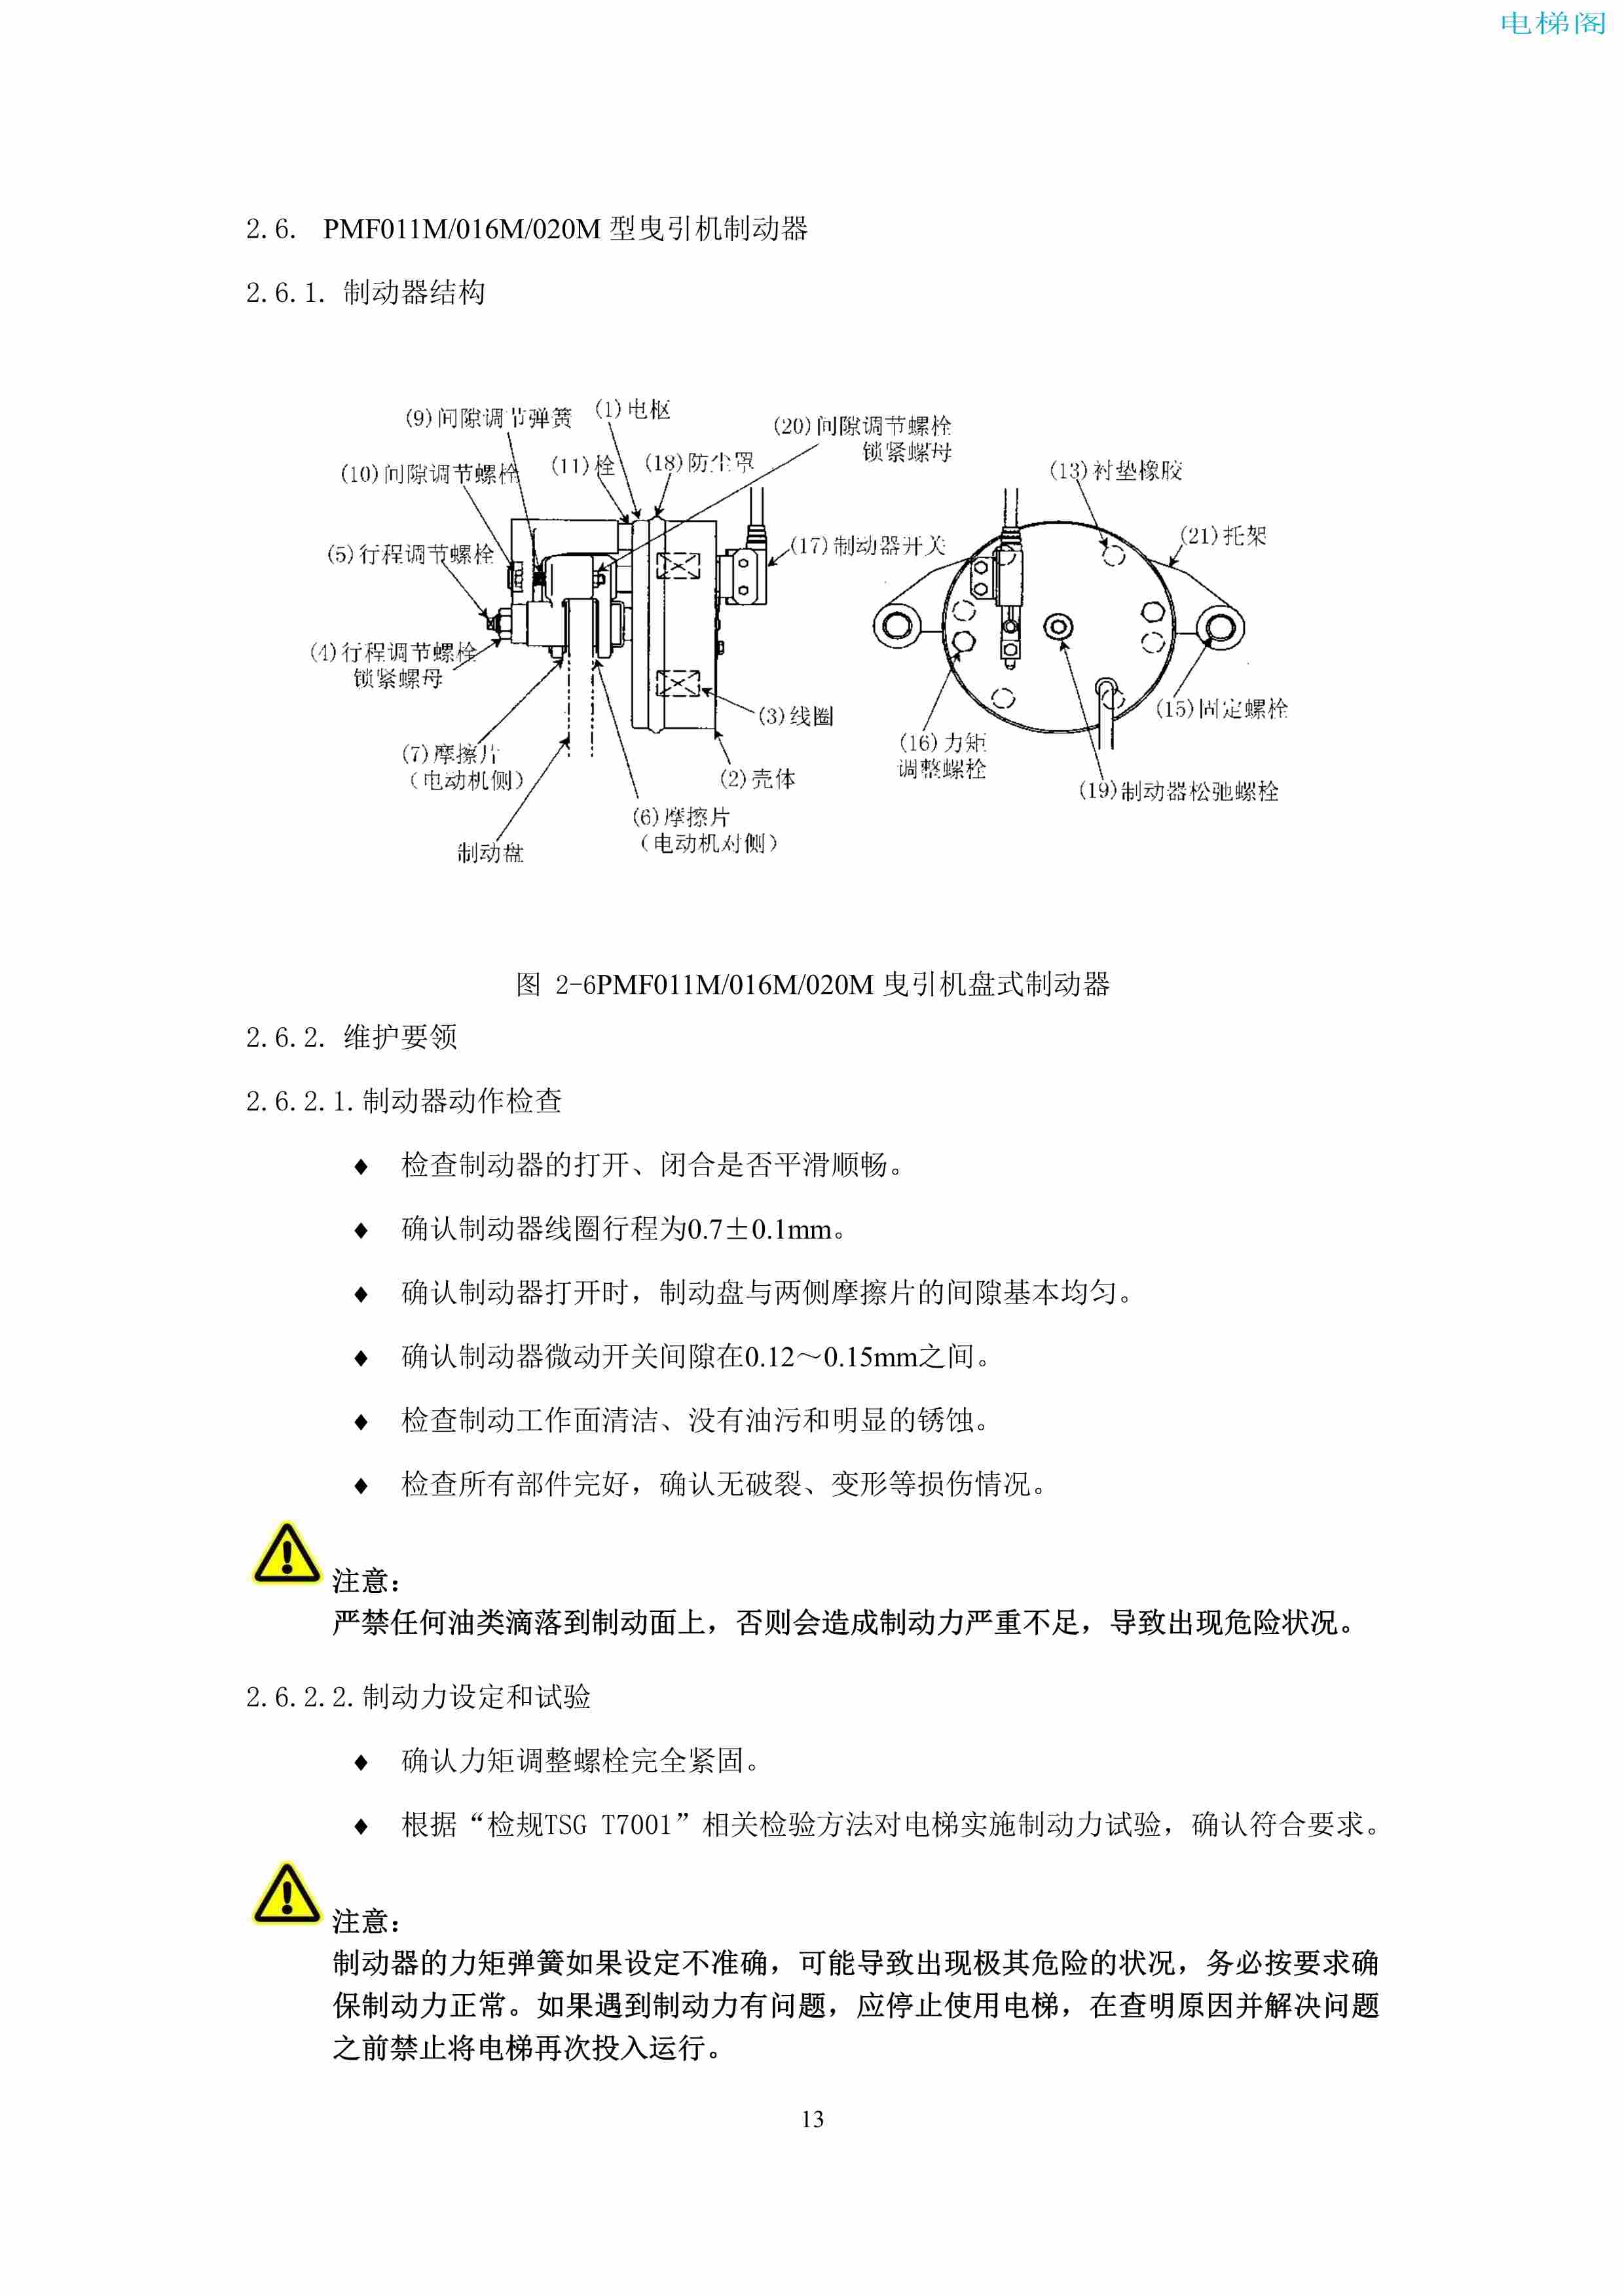 上海三菱电梯有限公司电梯制动器维护作业要领汇编_15.jpg